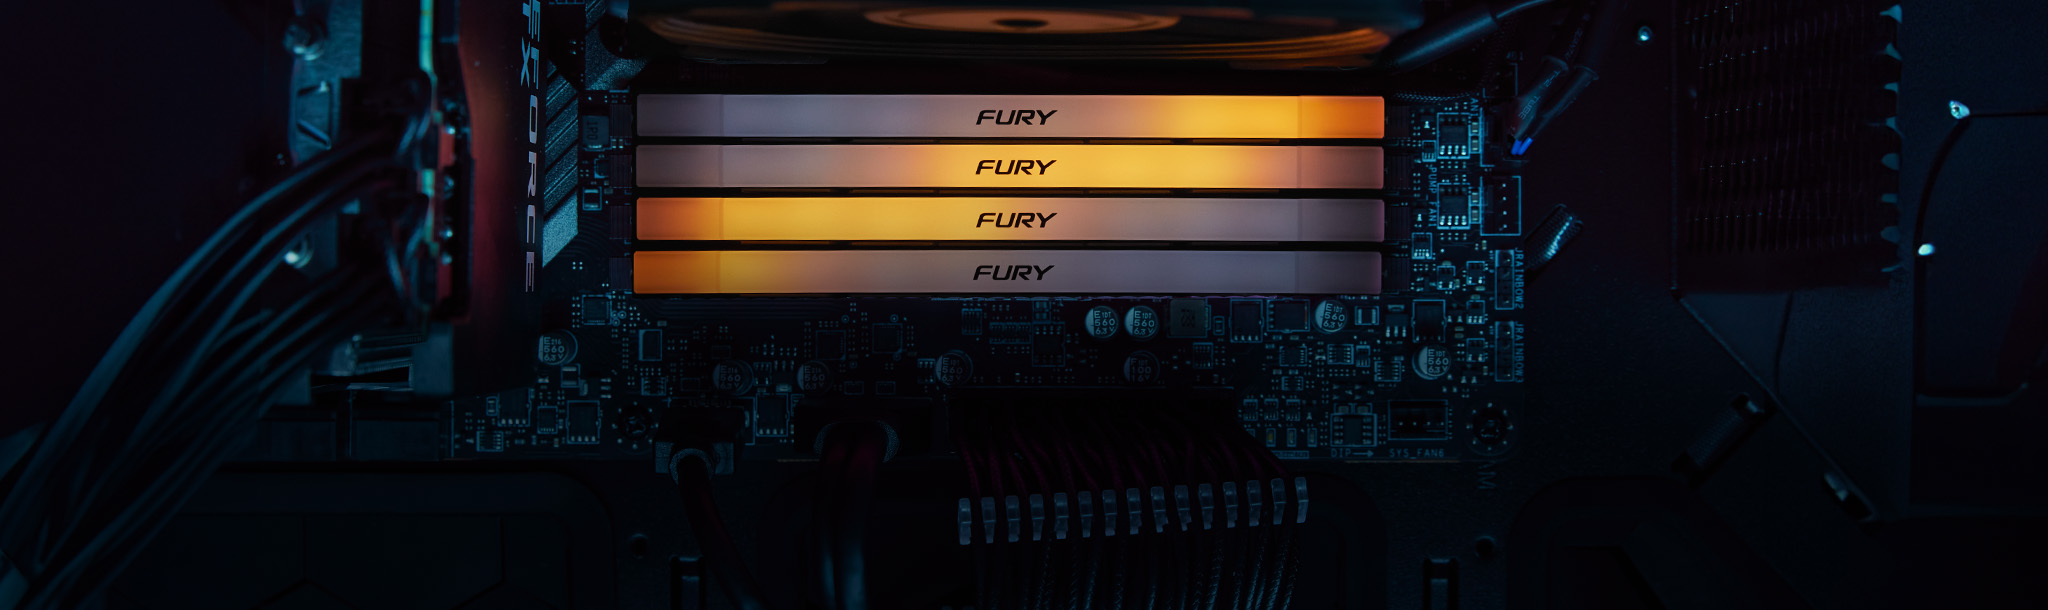 主板中颜色不同的 Kingston FURY Renegade DDR4 RGB 模组